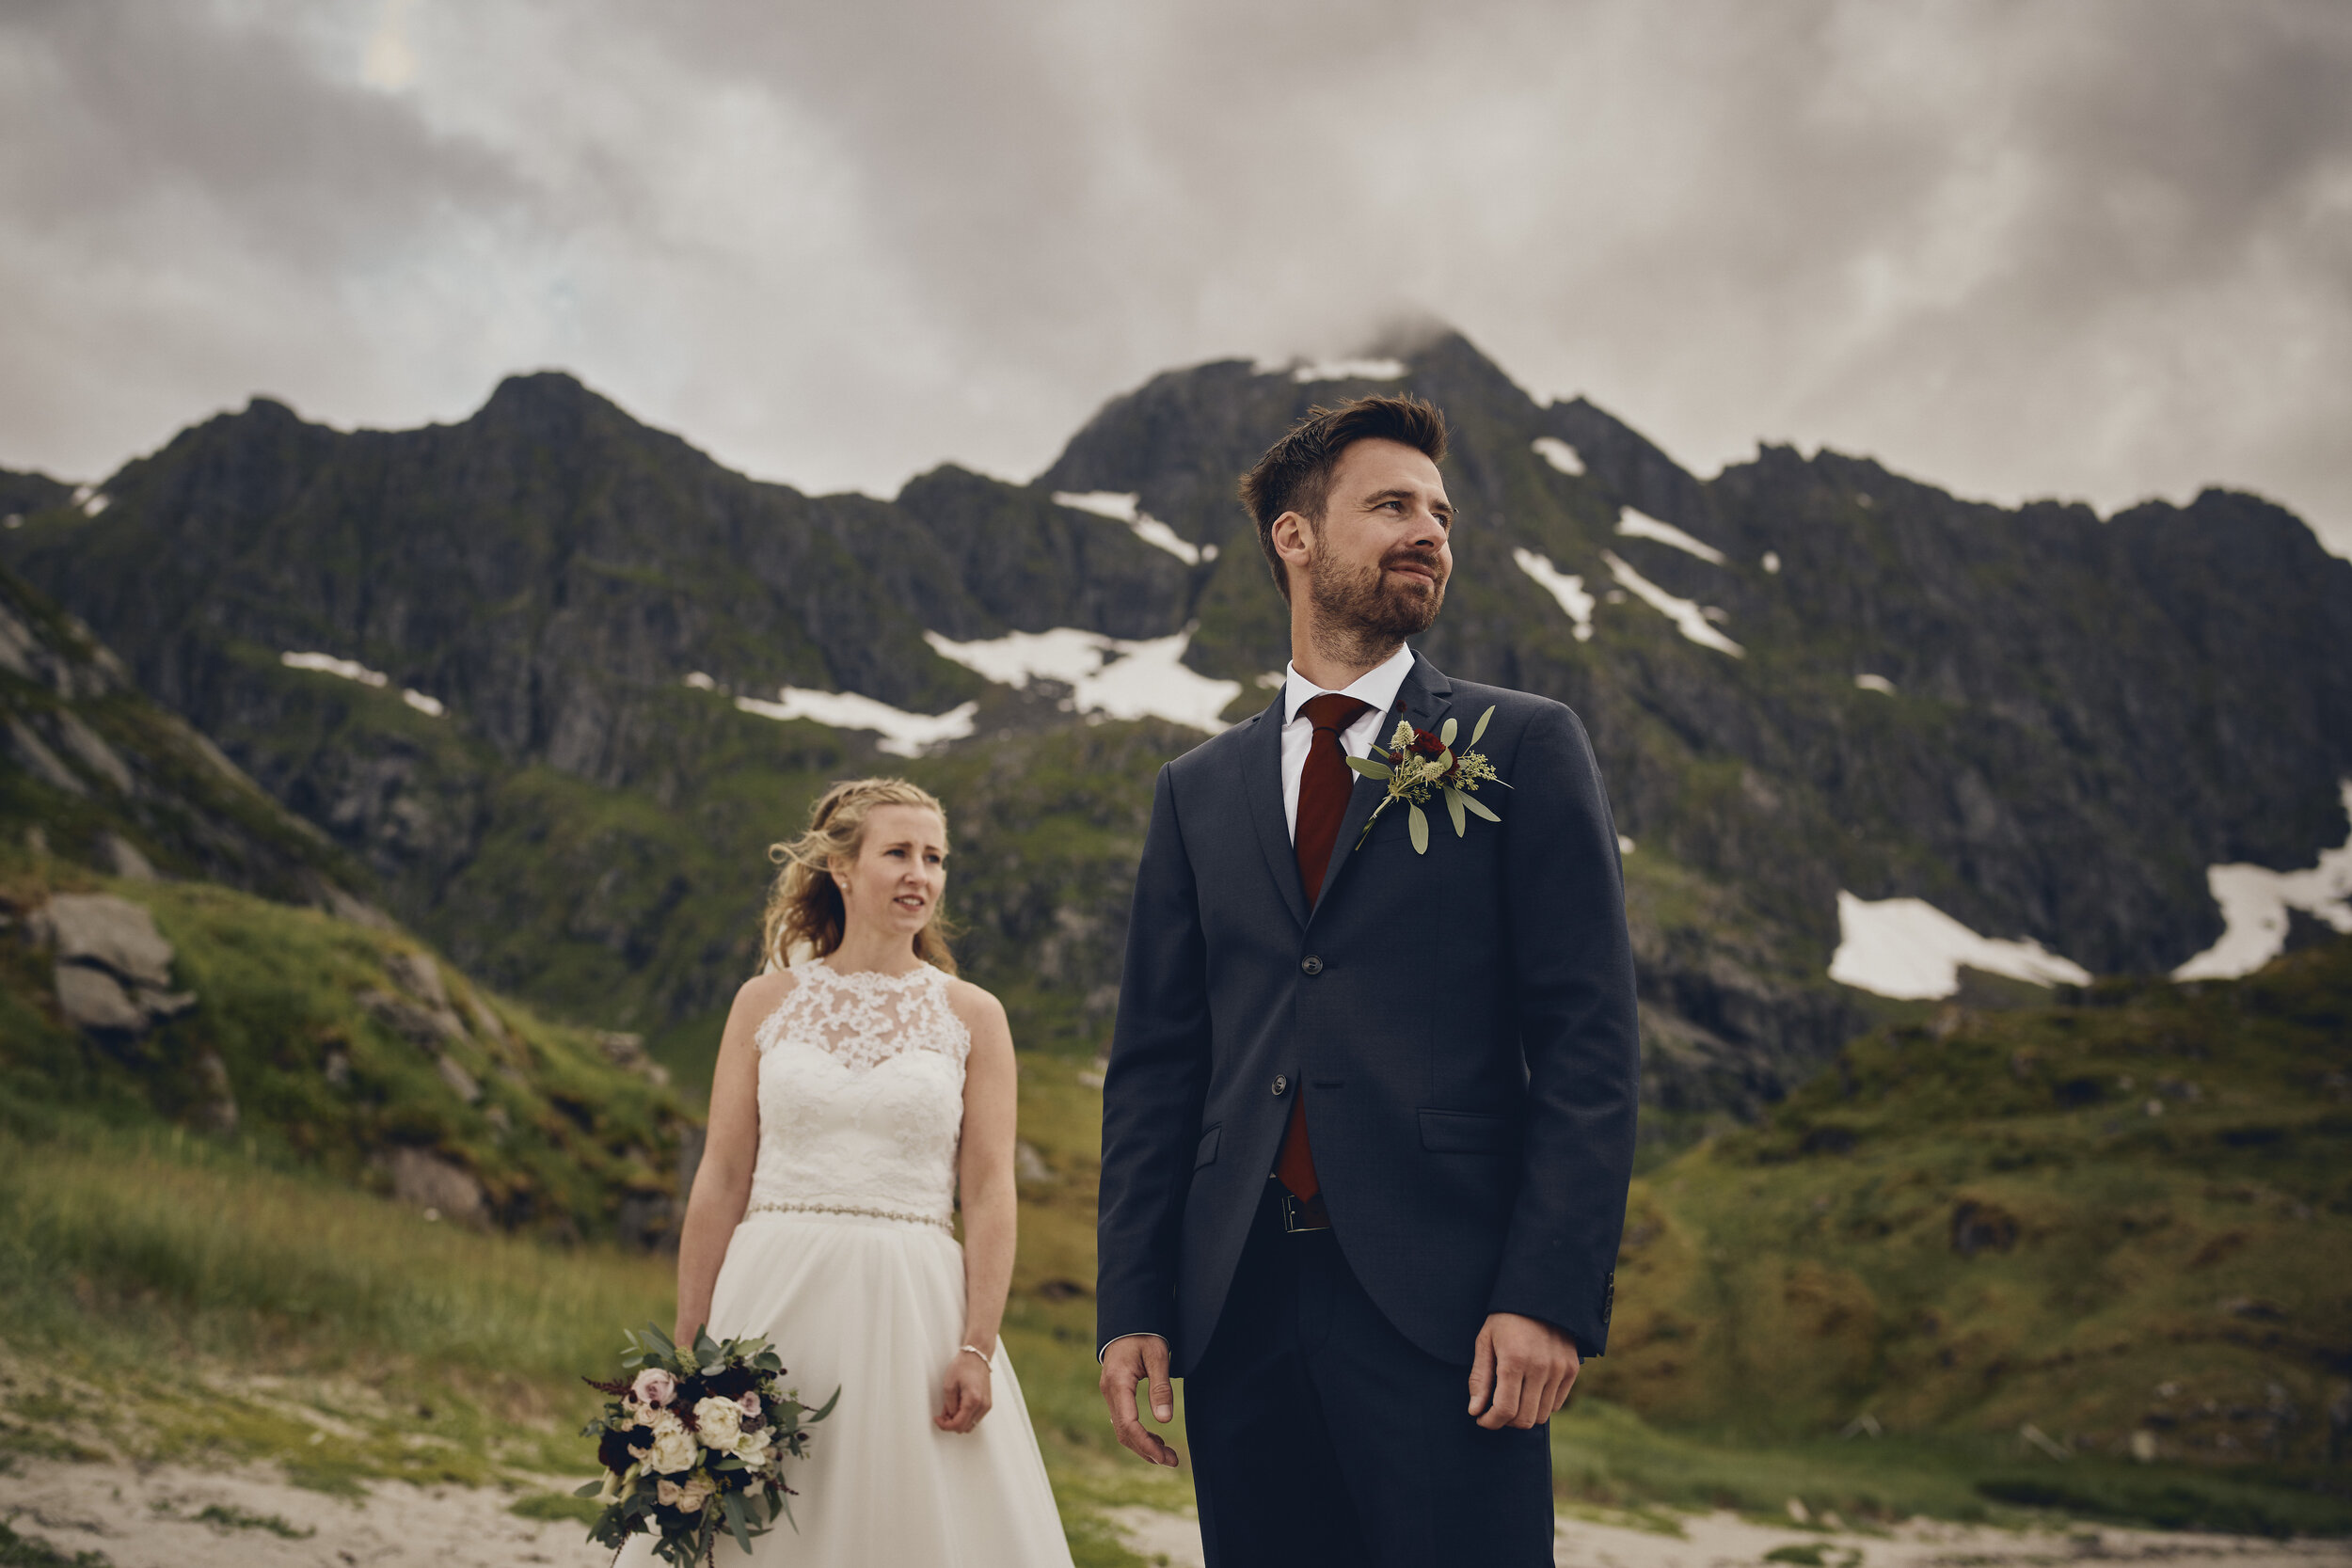   Bryllup på Bjørnsand i Lofoten:  Turen til Lofoten ble et av årets vakreste begivenheter og absolutt mest spesielle opplevelser for oss. Planen til Silje og Bernt var et stort bryllup over en helg med gjester fra alle kanter av landet. Etter at kor